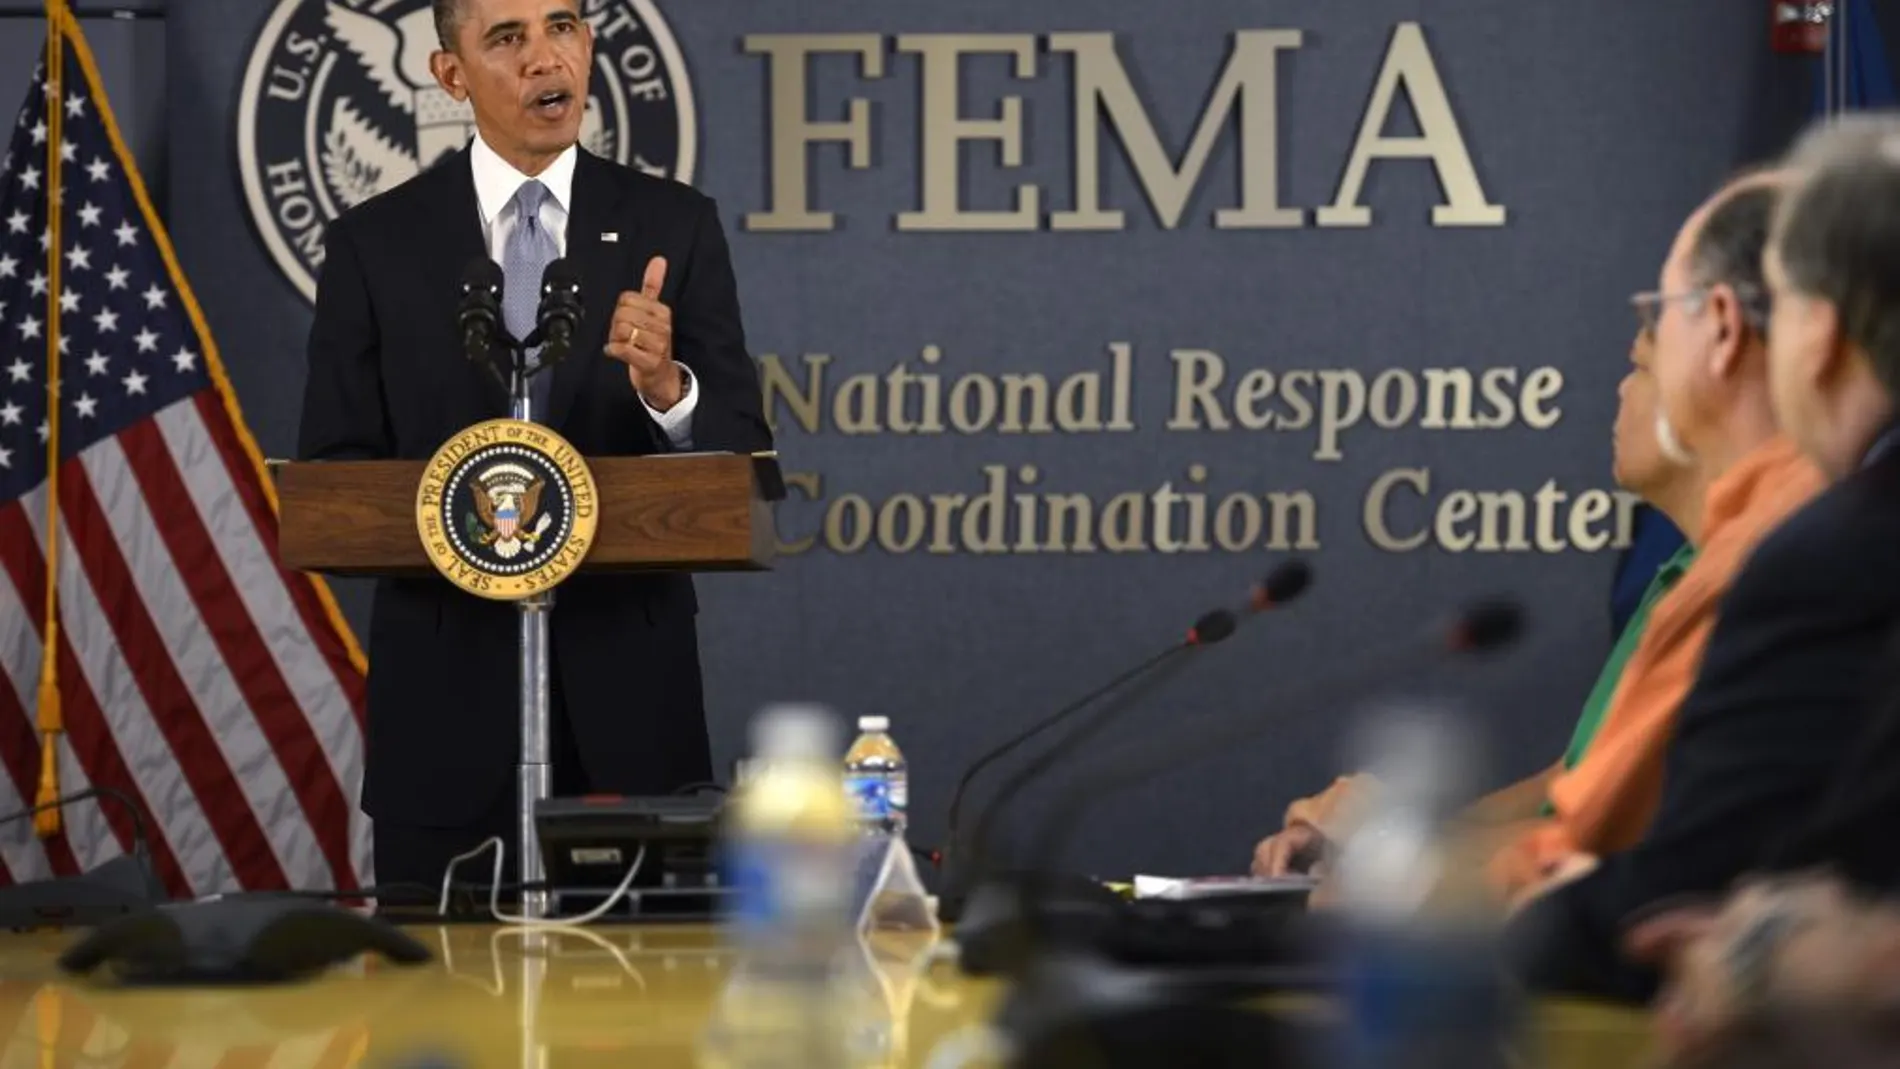 El presidente estadounidense, Barack Obama, pronuncia un discurso durante su visita a la Agencia para el Manejo de Emergencias (FEMA) en Washington DC, Estados Unidos, hoy, lunes 7 de octubre de 2013.